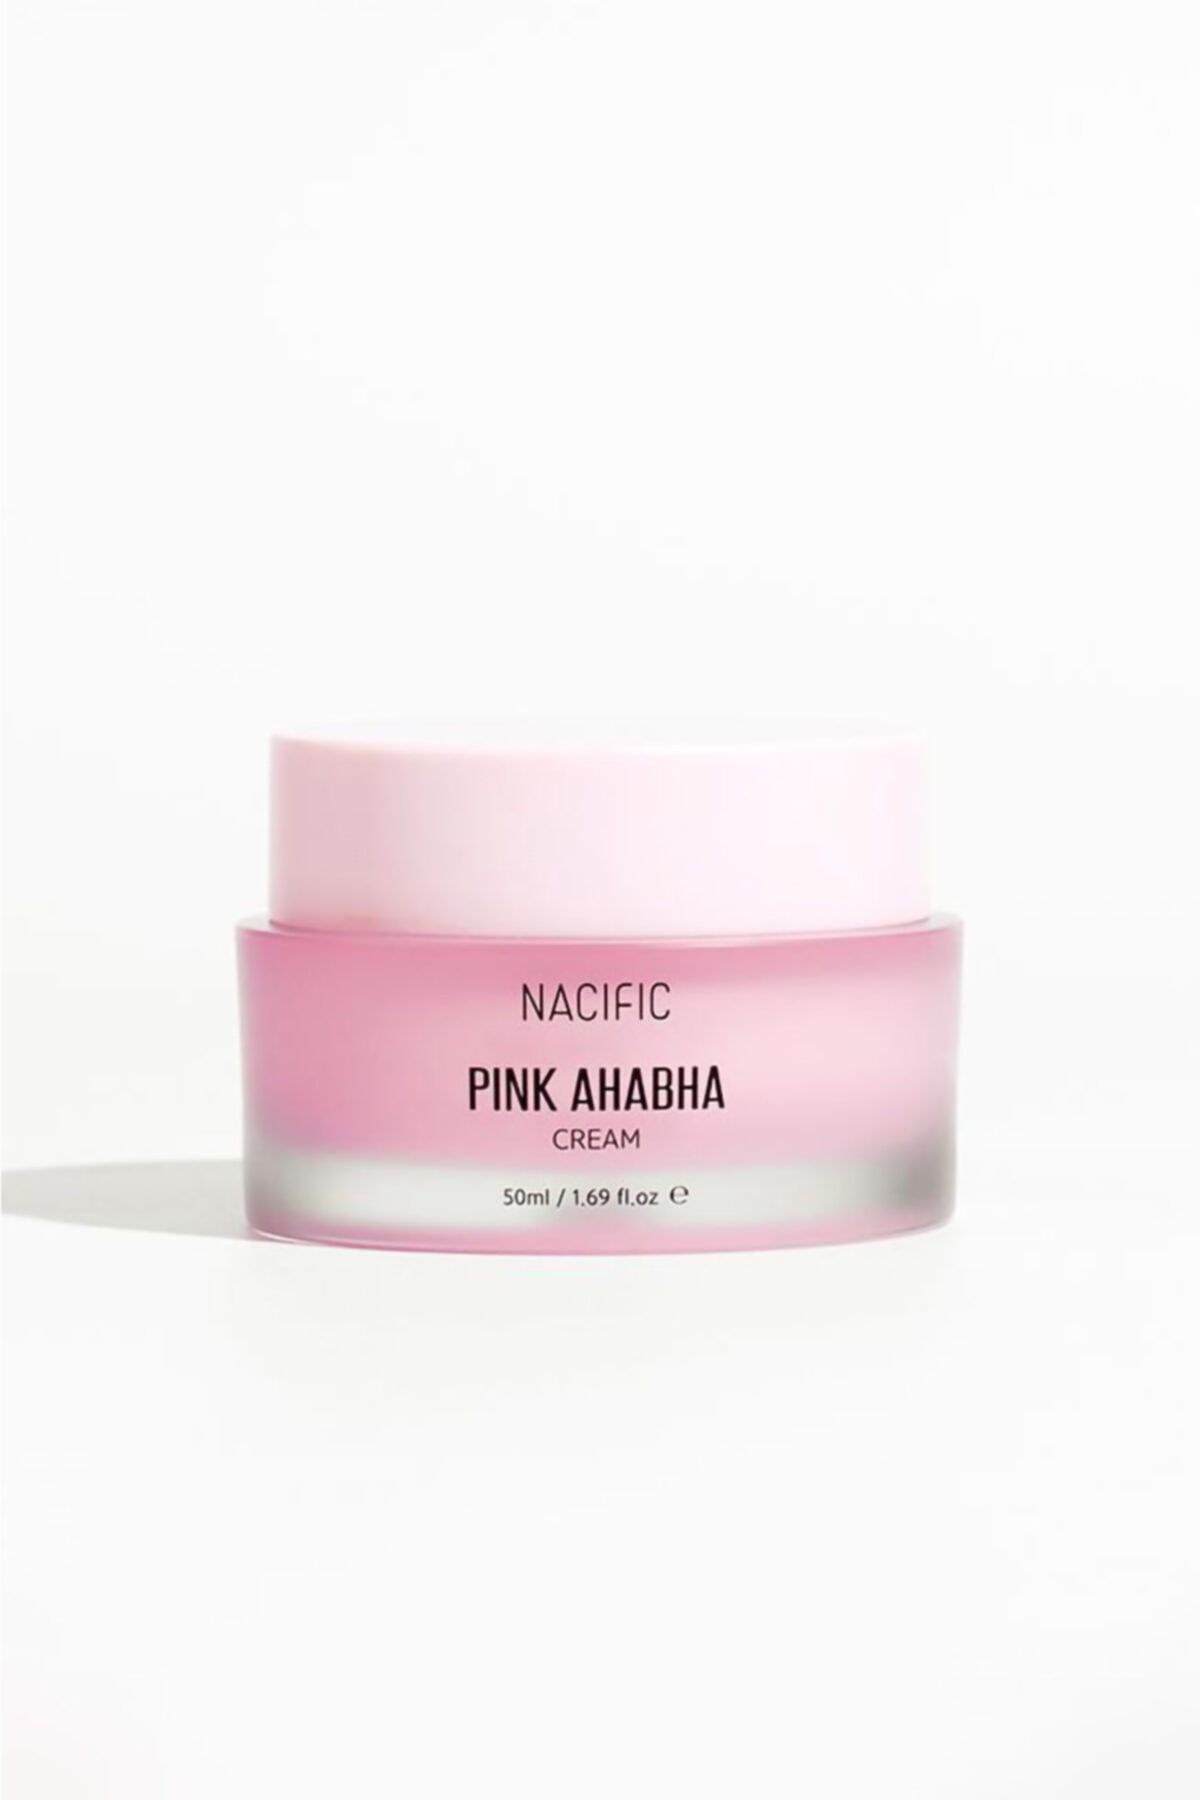 Nacific Pink Aha Bha Cream - Siyah Nokta Ve Sivilceli Ciltler Nemlendirici